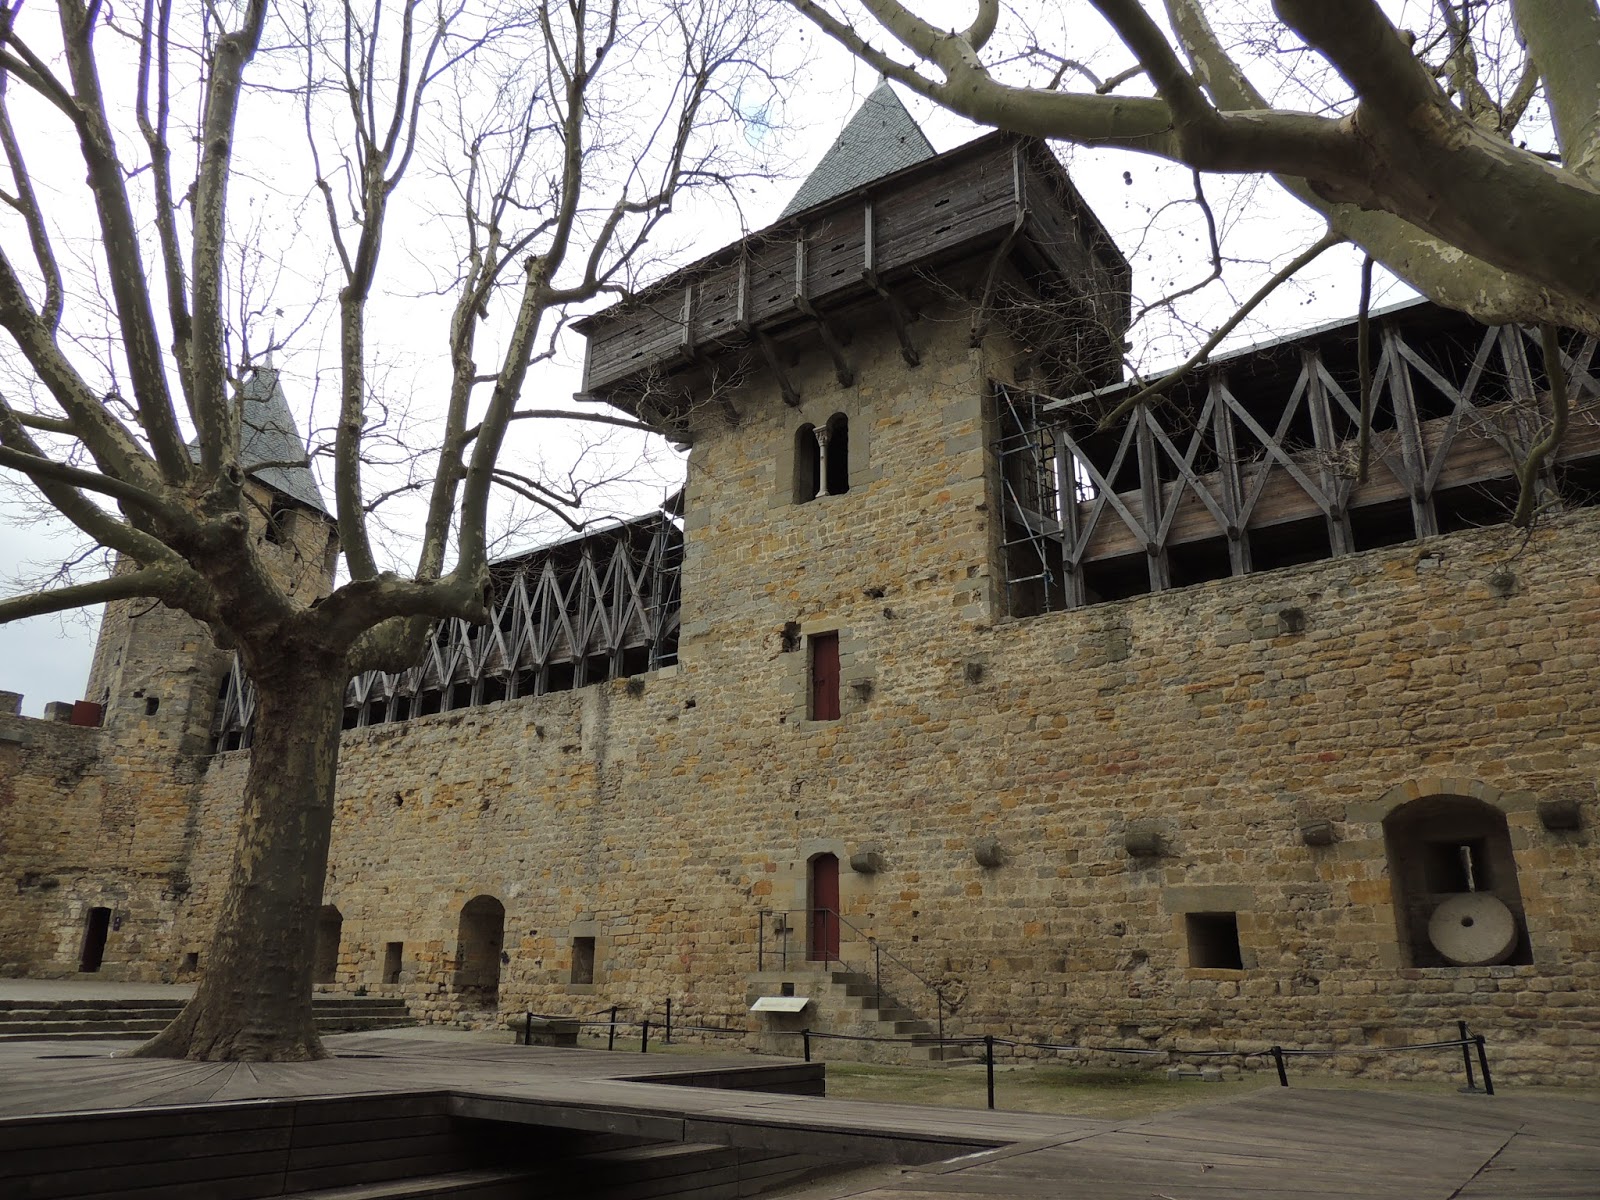 Pueblos y pueblos medievales!! Alucinantes - Blogs de Francia - CARCASSONNE, FRANCIA (16)